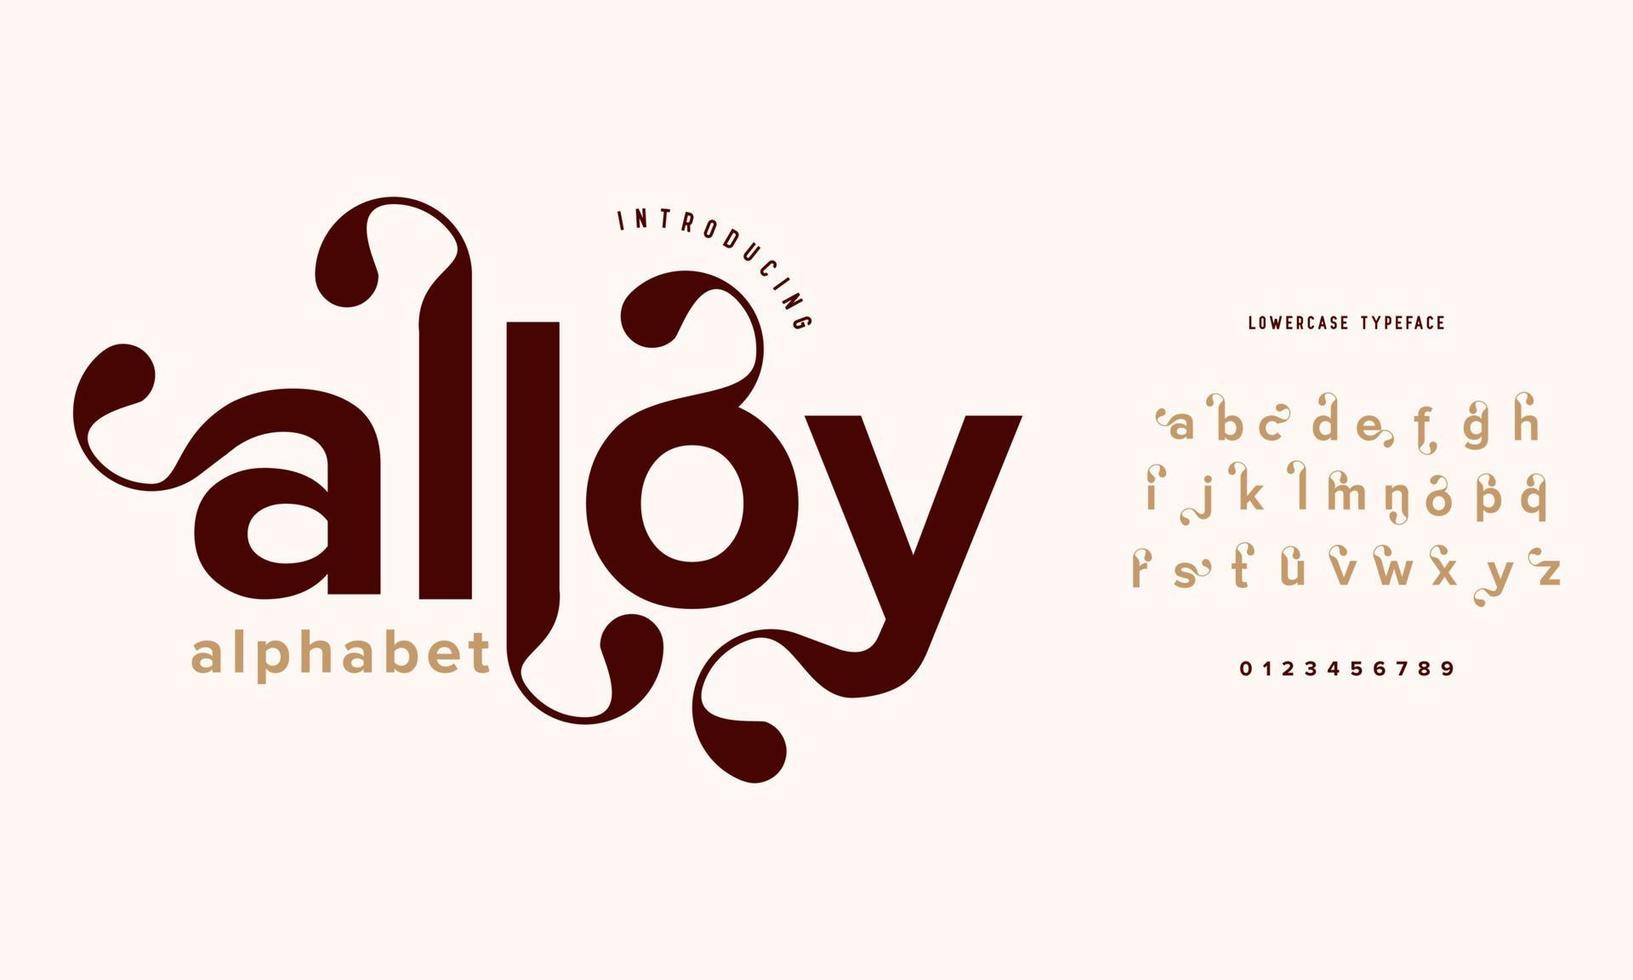 tipografía elegante fuente serif clásica decorativa vintage retro. aleación de lujo elegante letras y números del alfabeto. vector